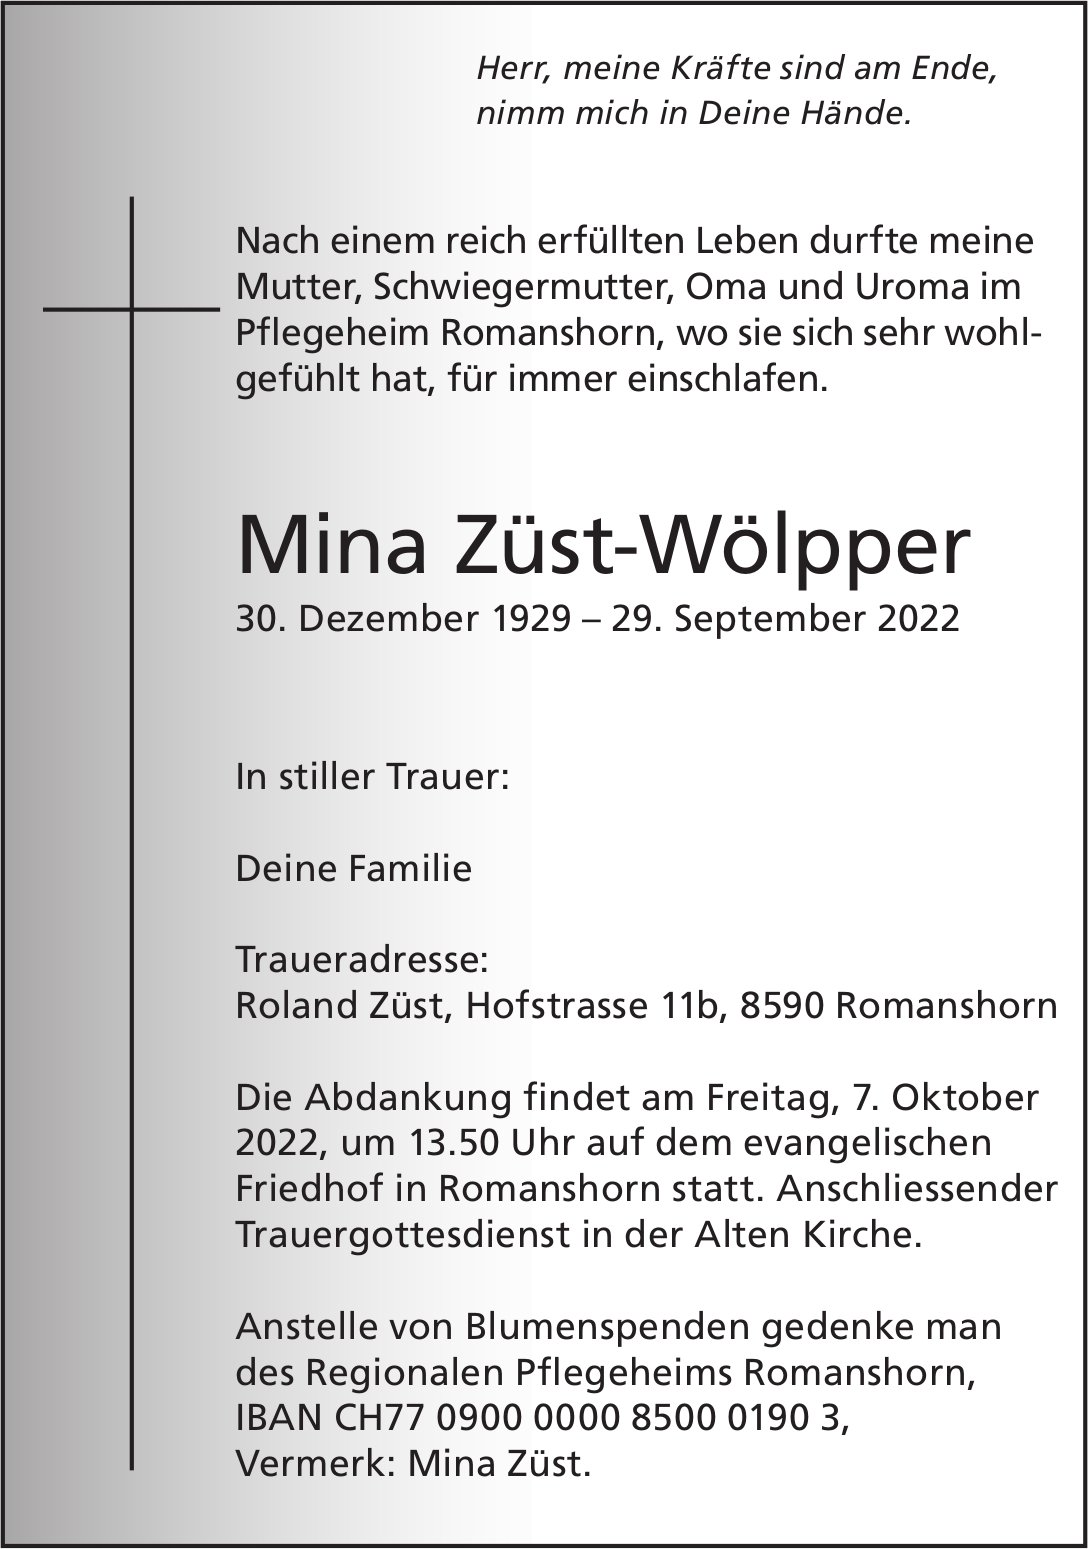 Züst-Wölpper Mina / TA